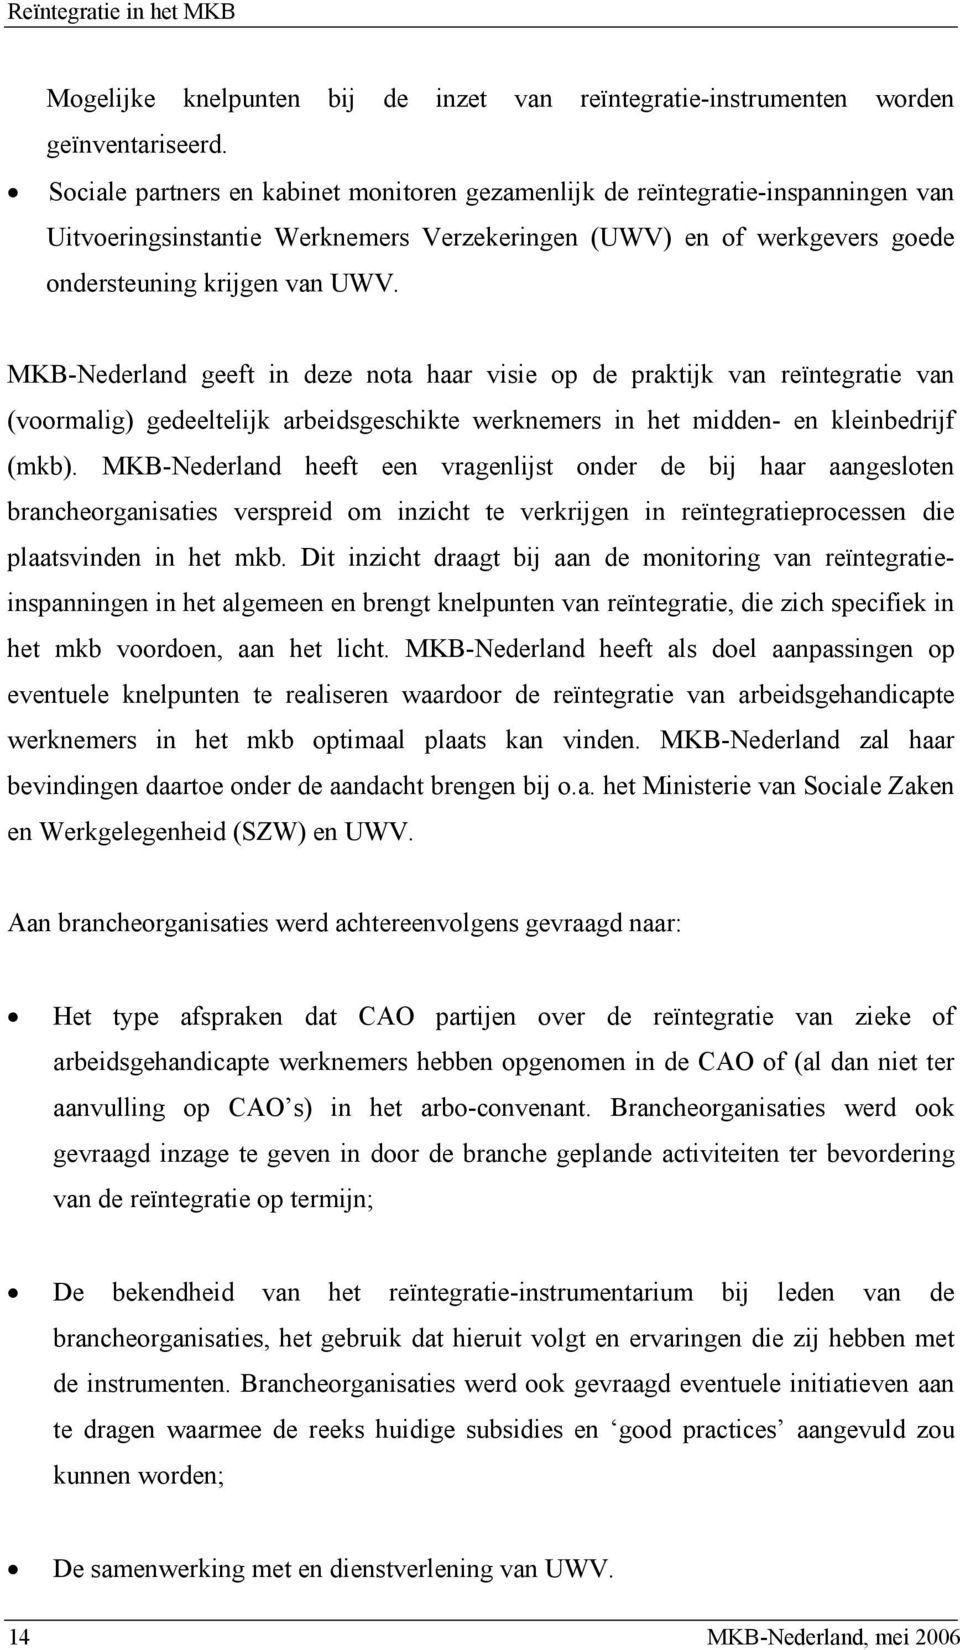 MKB-Nederland geeft in deze nota haar visie op de praktijk van reïntegratie van (voormalig) gedeeltelijk arbeidsgeschikte werknemers in het midden- en kleinbedrijf (mkb).